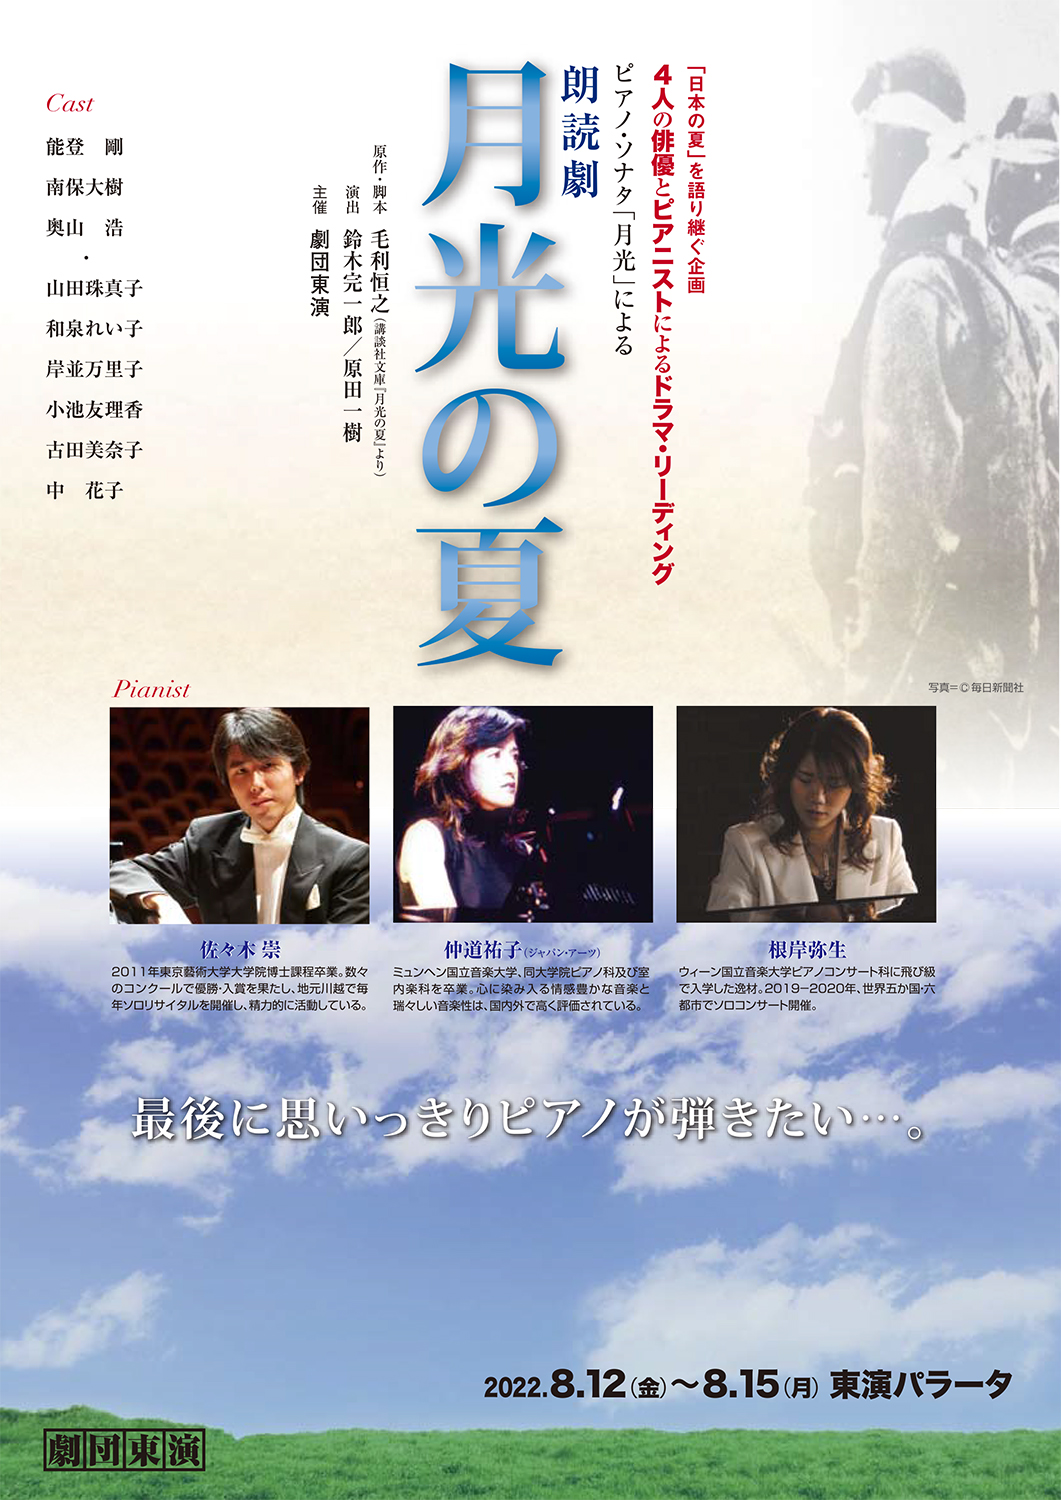 劇団東演「日本の夏」を語り継ぐ企画 <br>四人の俳優とピアニストによる<br>ドラマ・リーディング <br>ピアノ・ソナタ「月光」による<br>朗読劇『月光の夏』